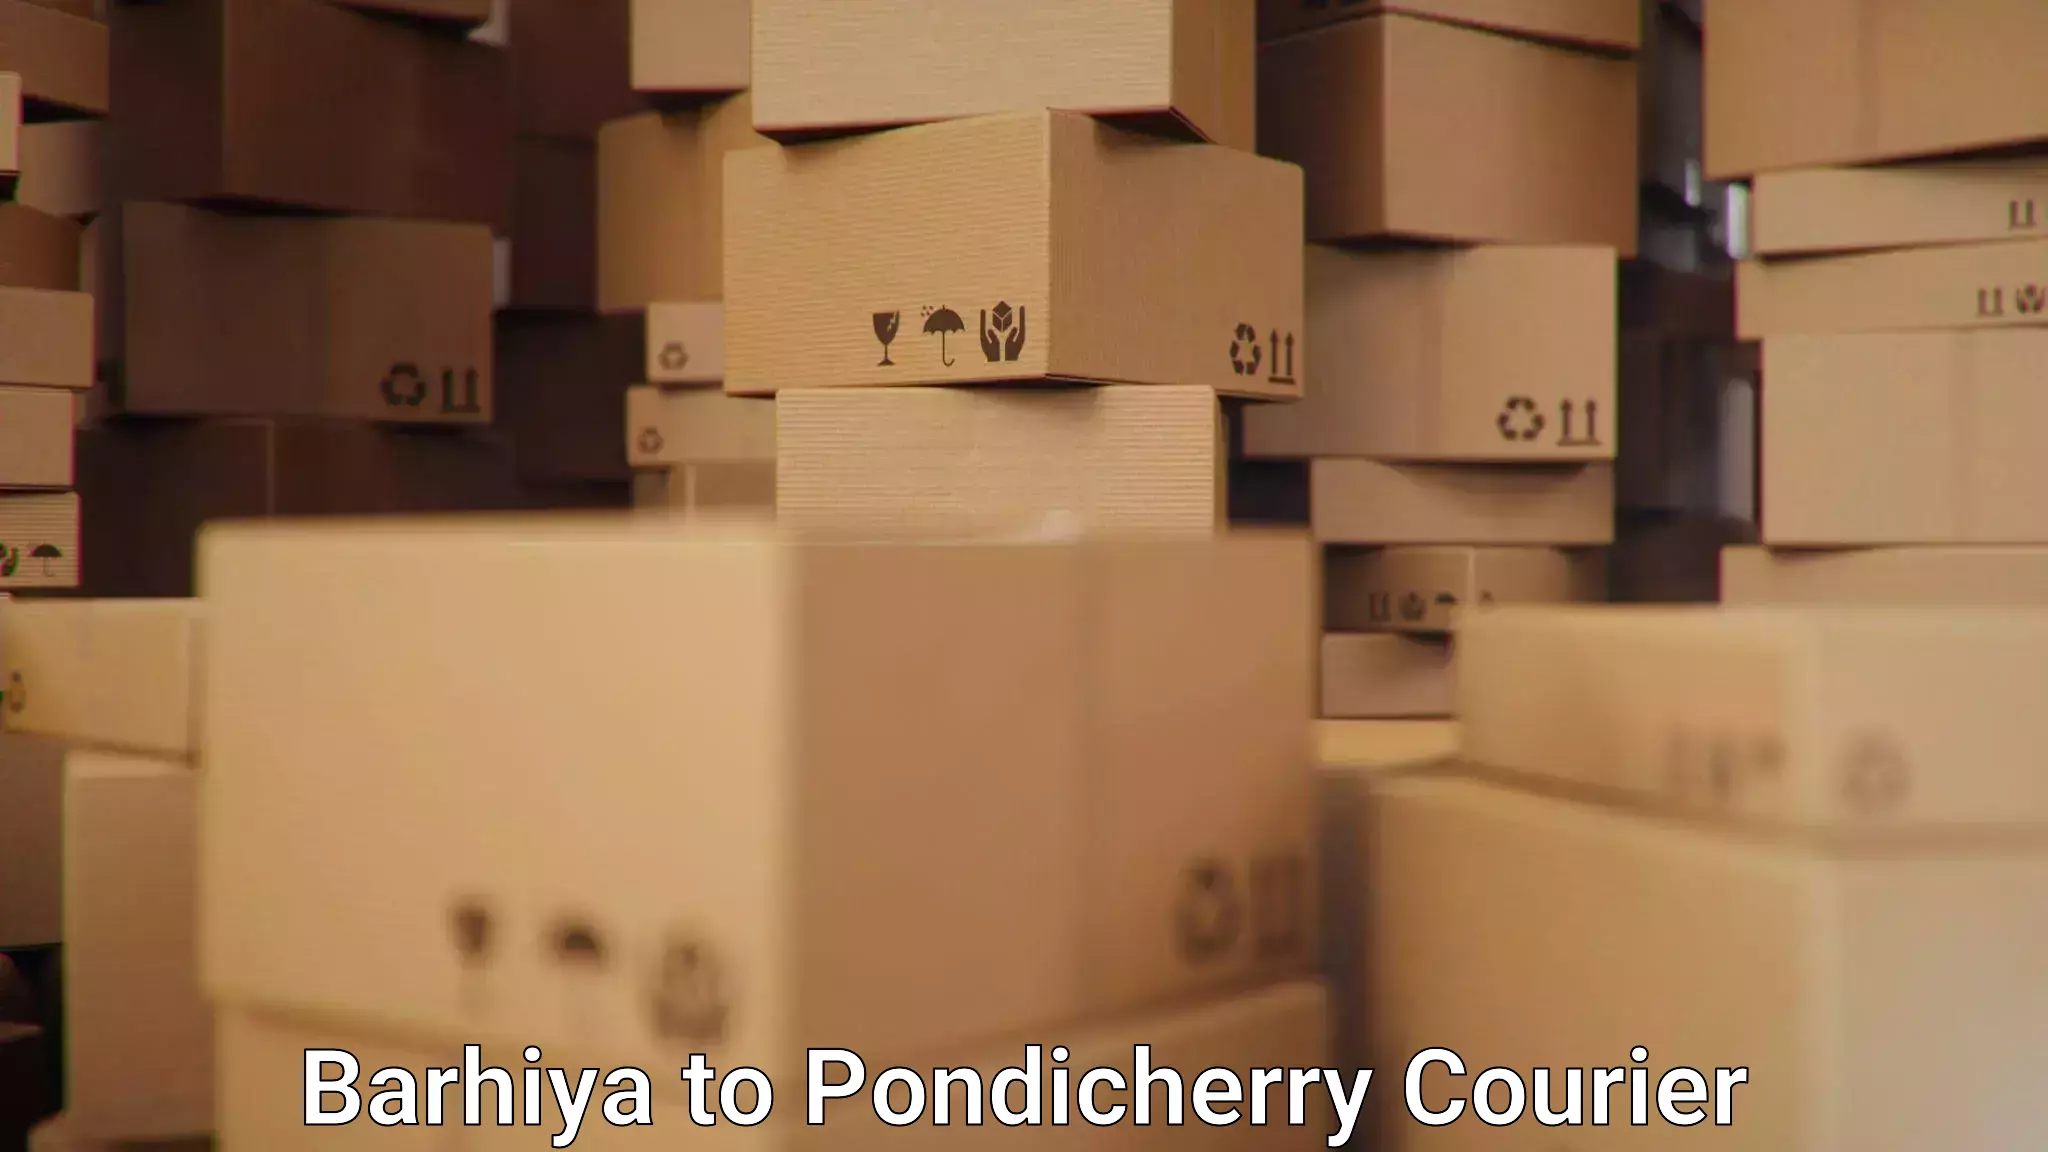 Supply chain delivery Barhiya to Pondicherry University